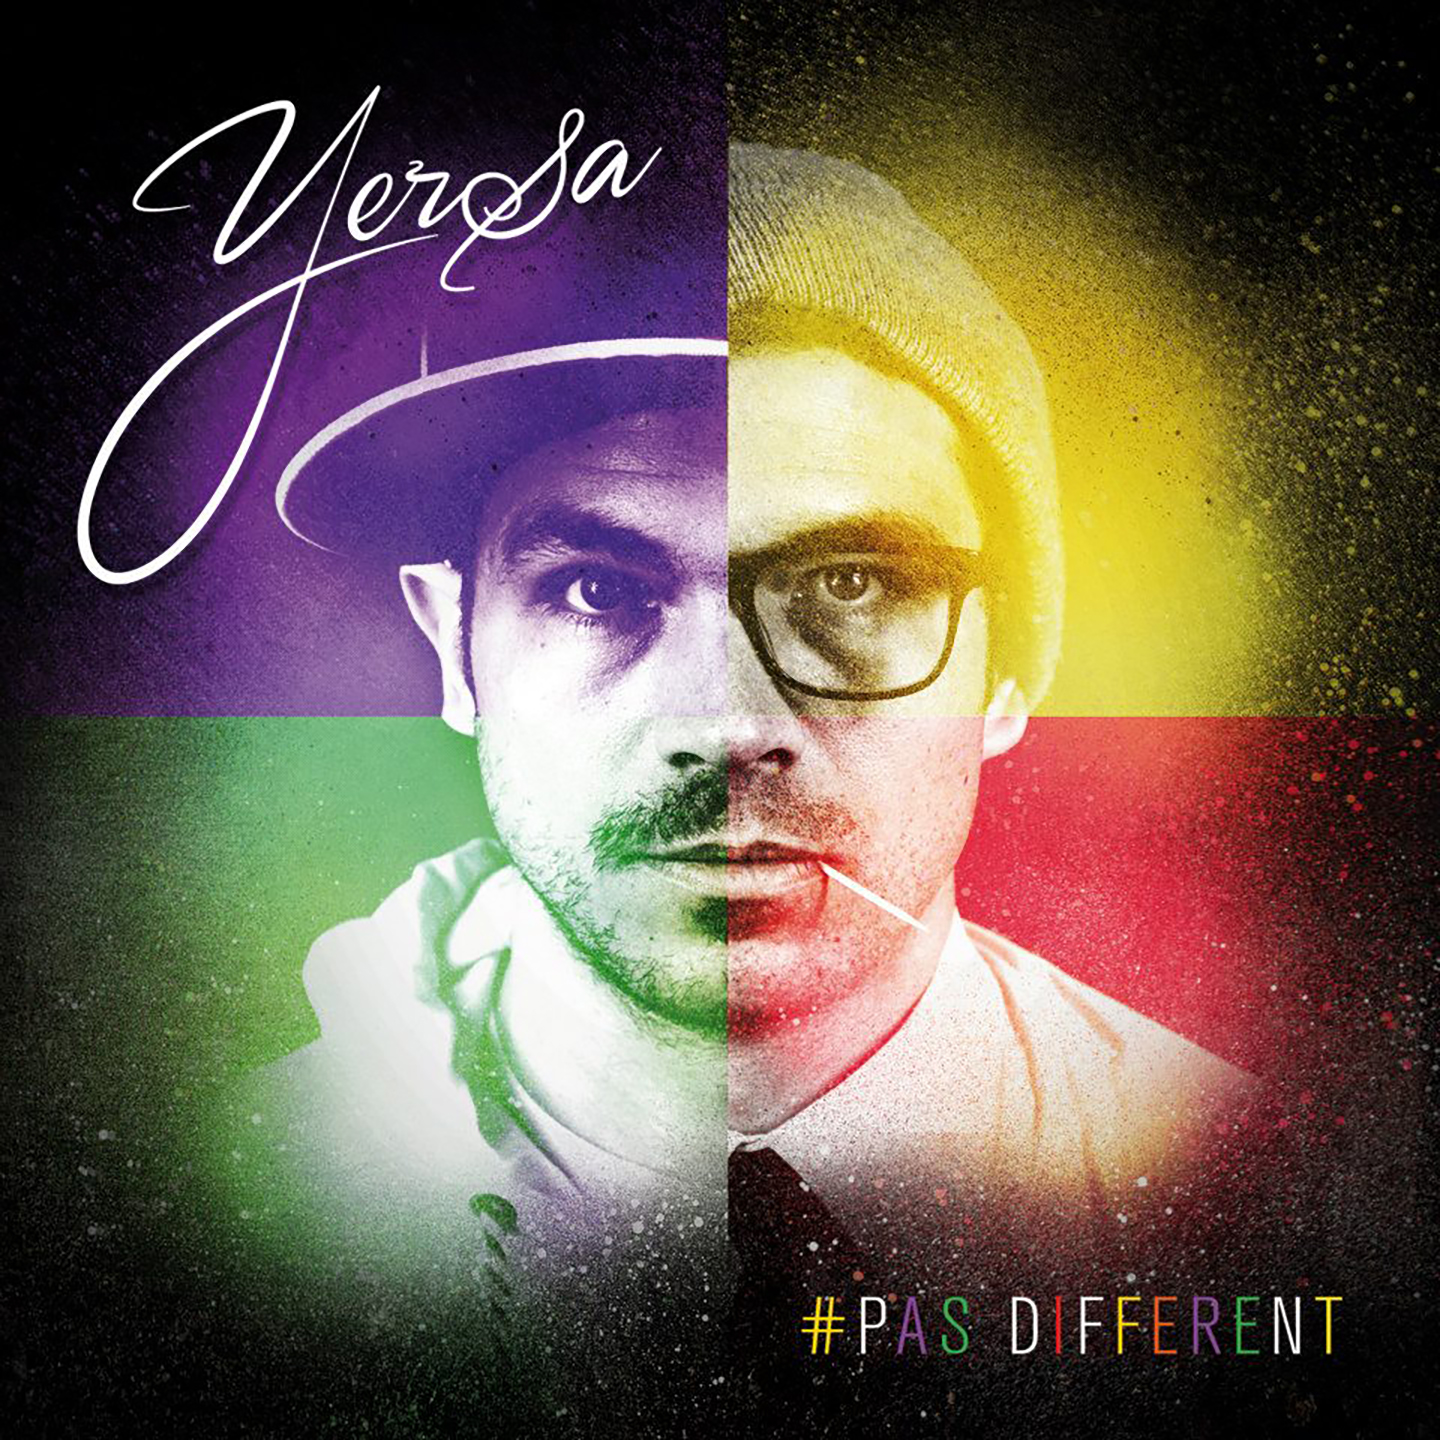 Cover de l'album de Yersa - Pas different. Réalisé par Loseou